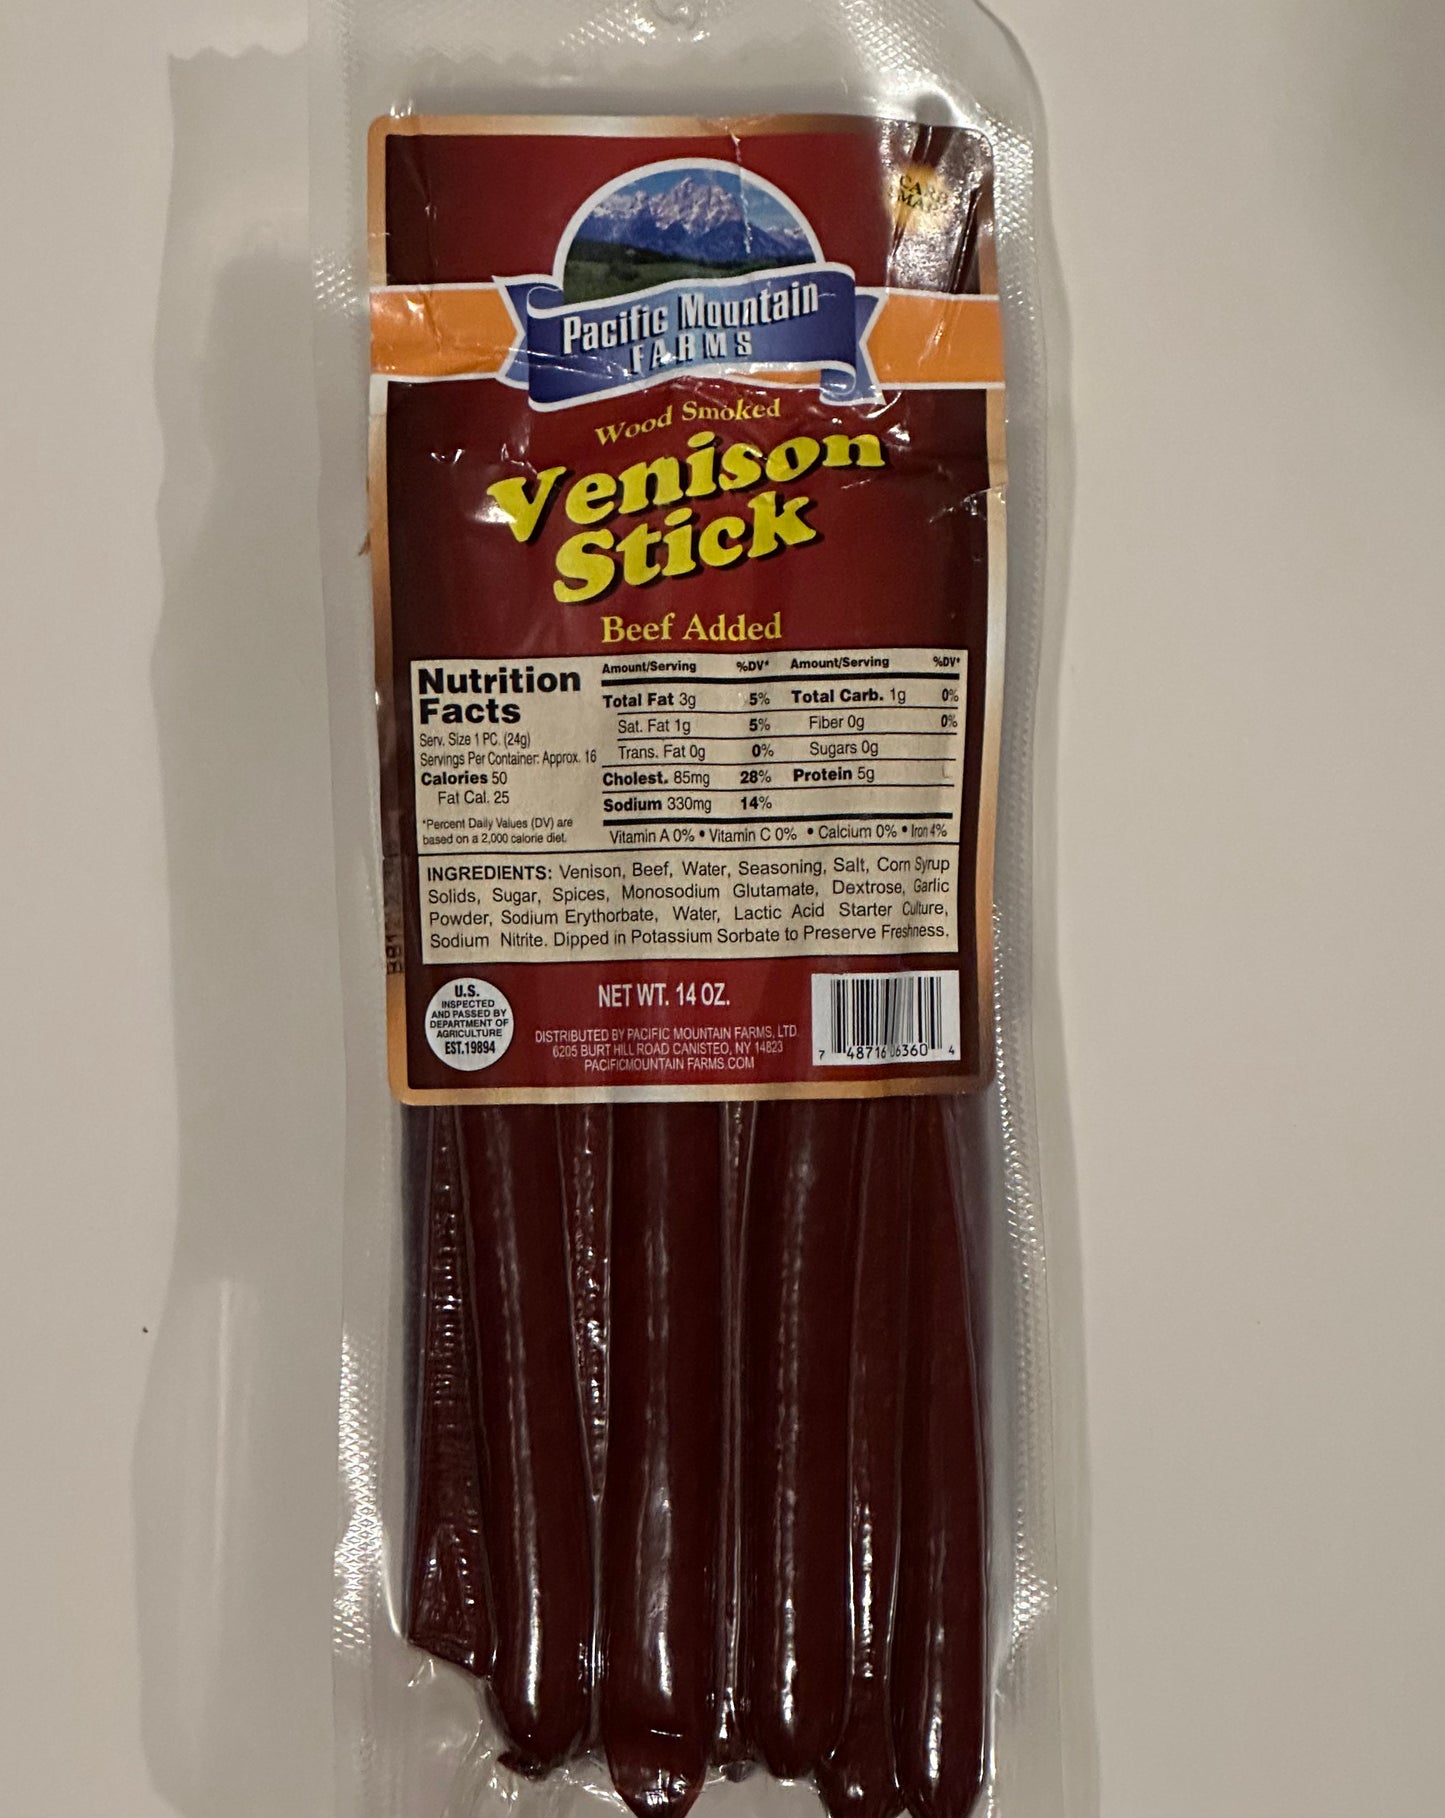 Venison Snack Sticks